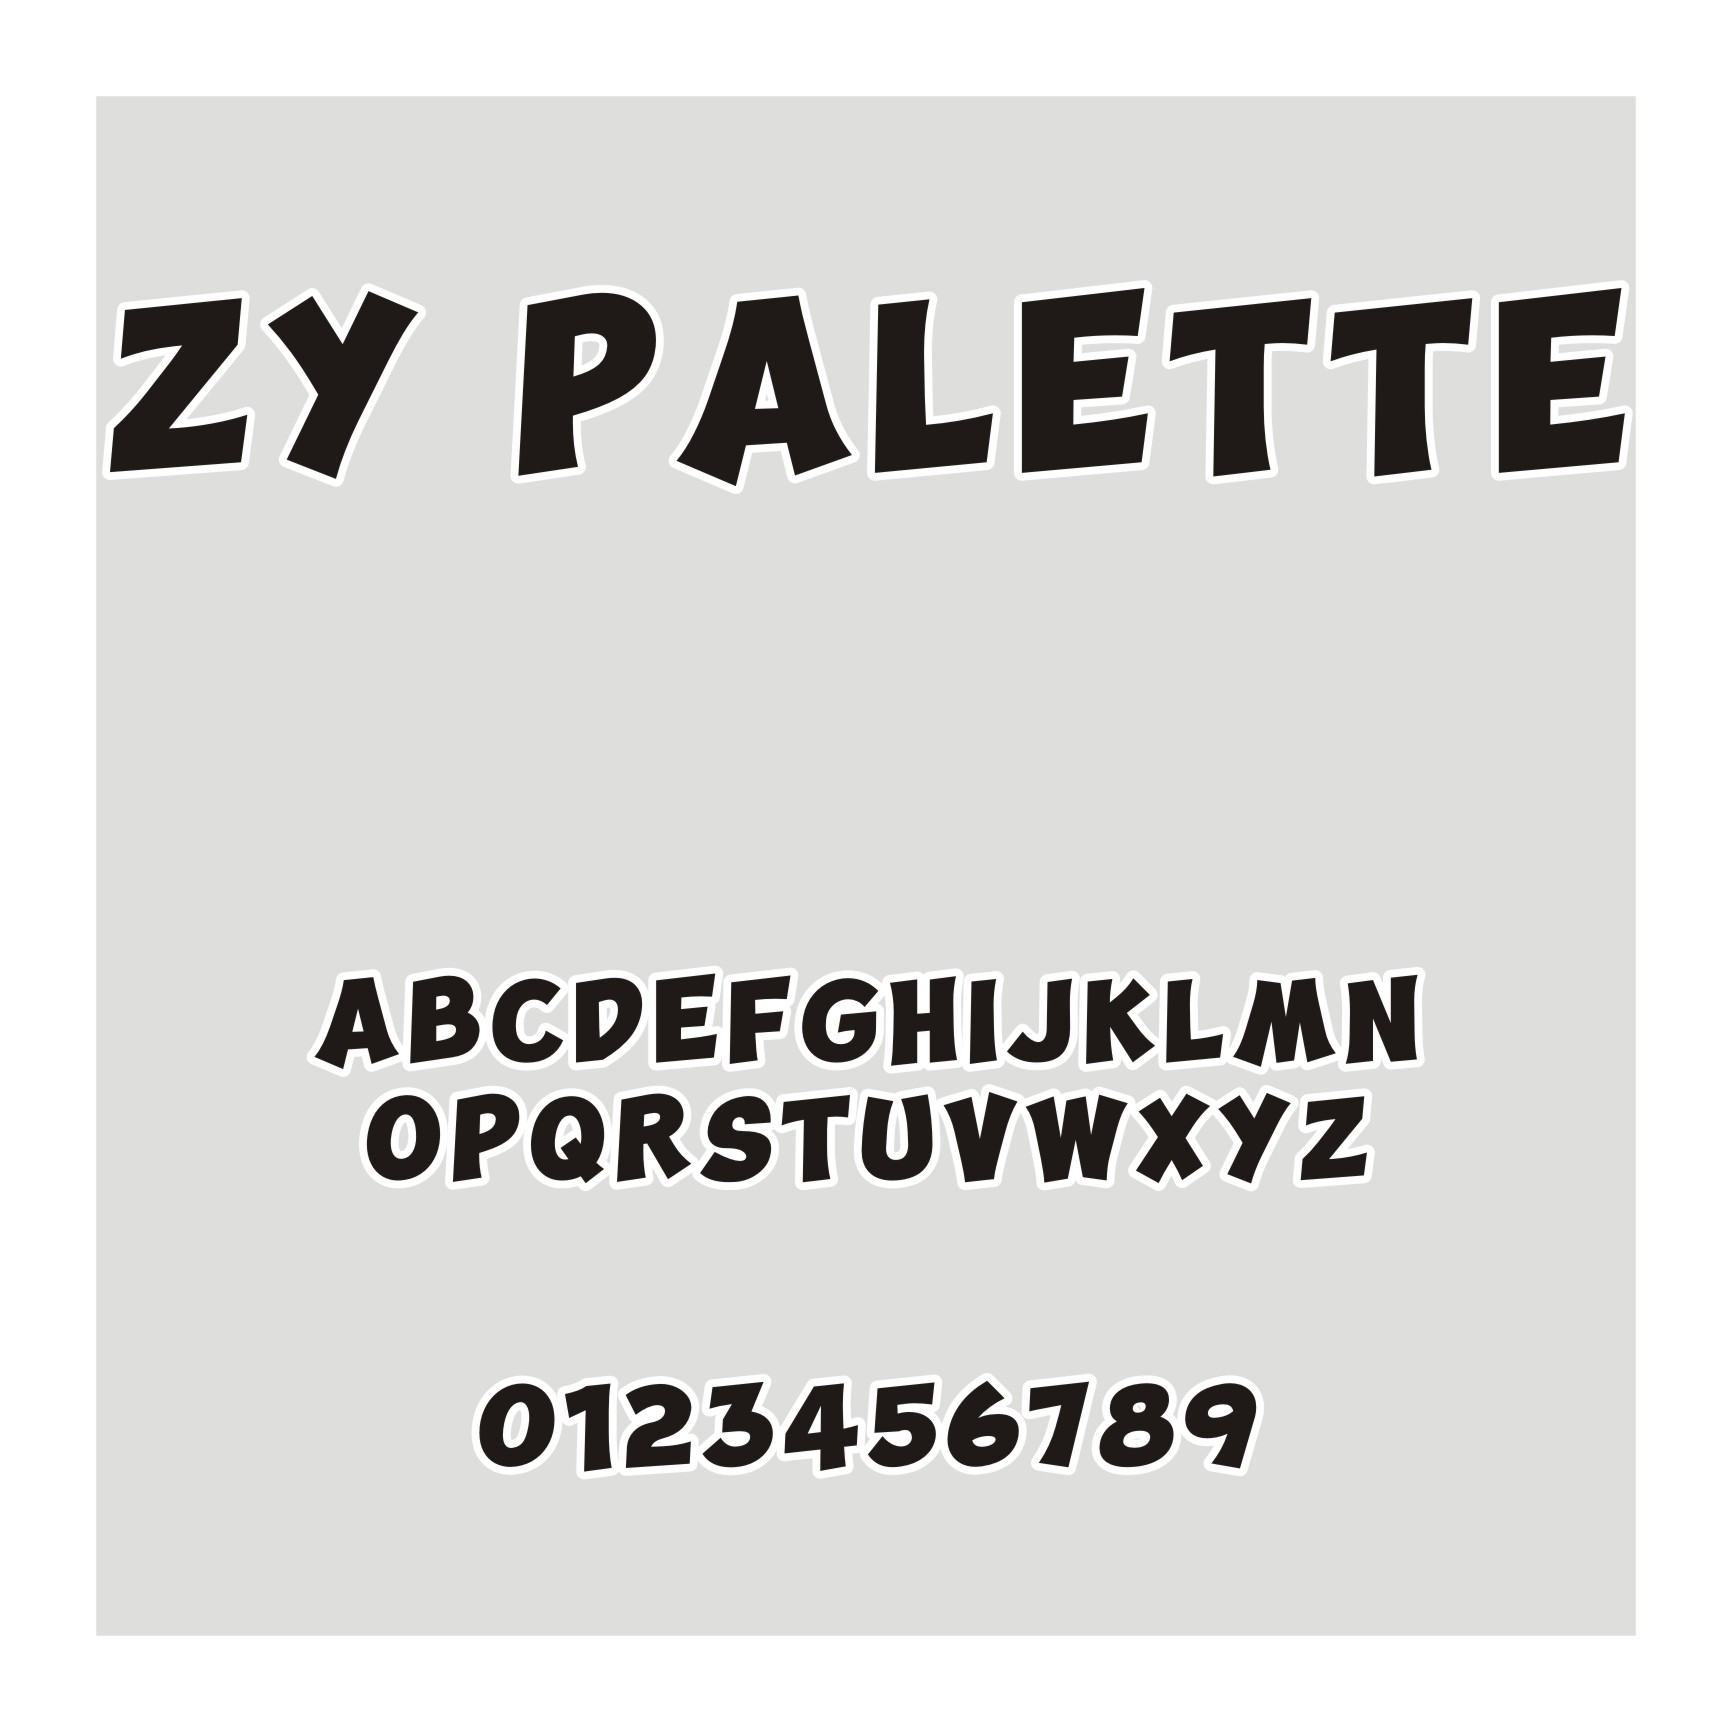 ZY Palette